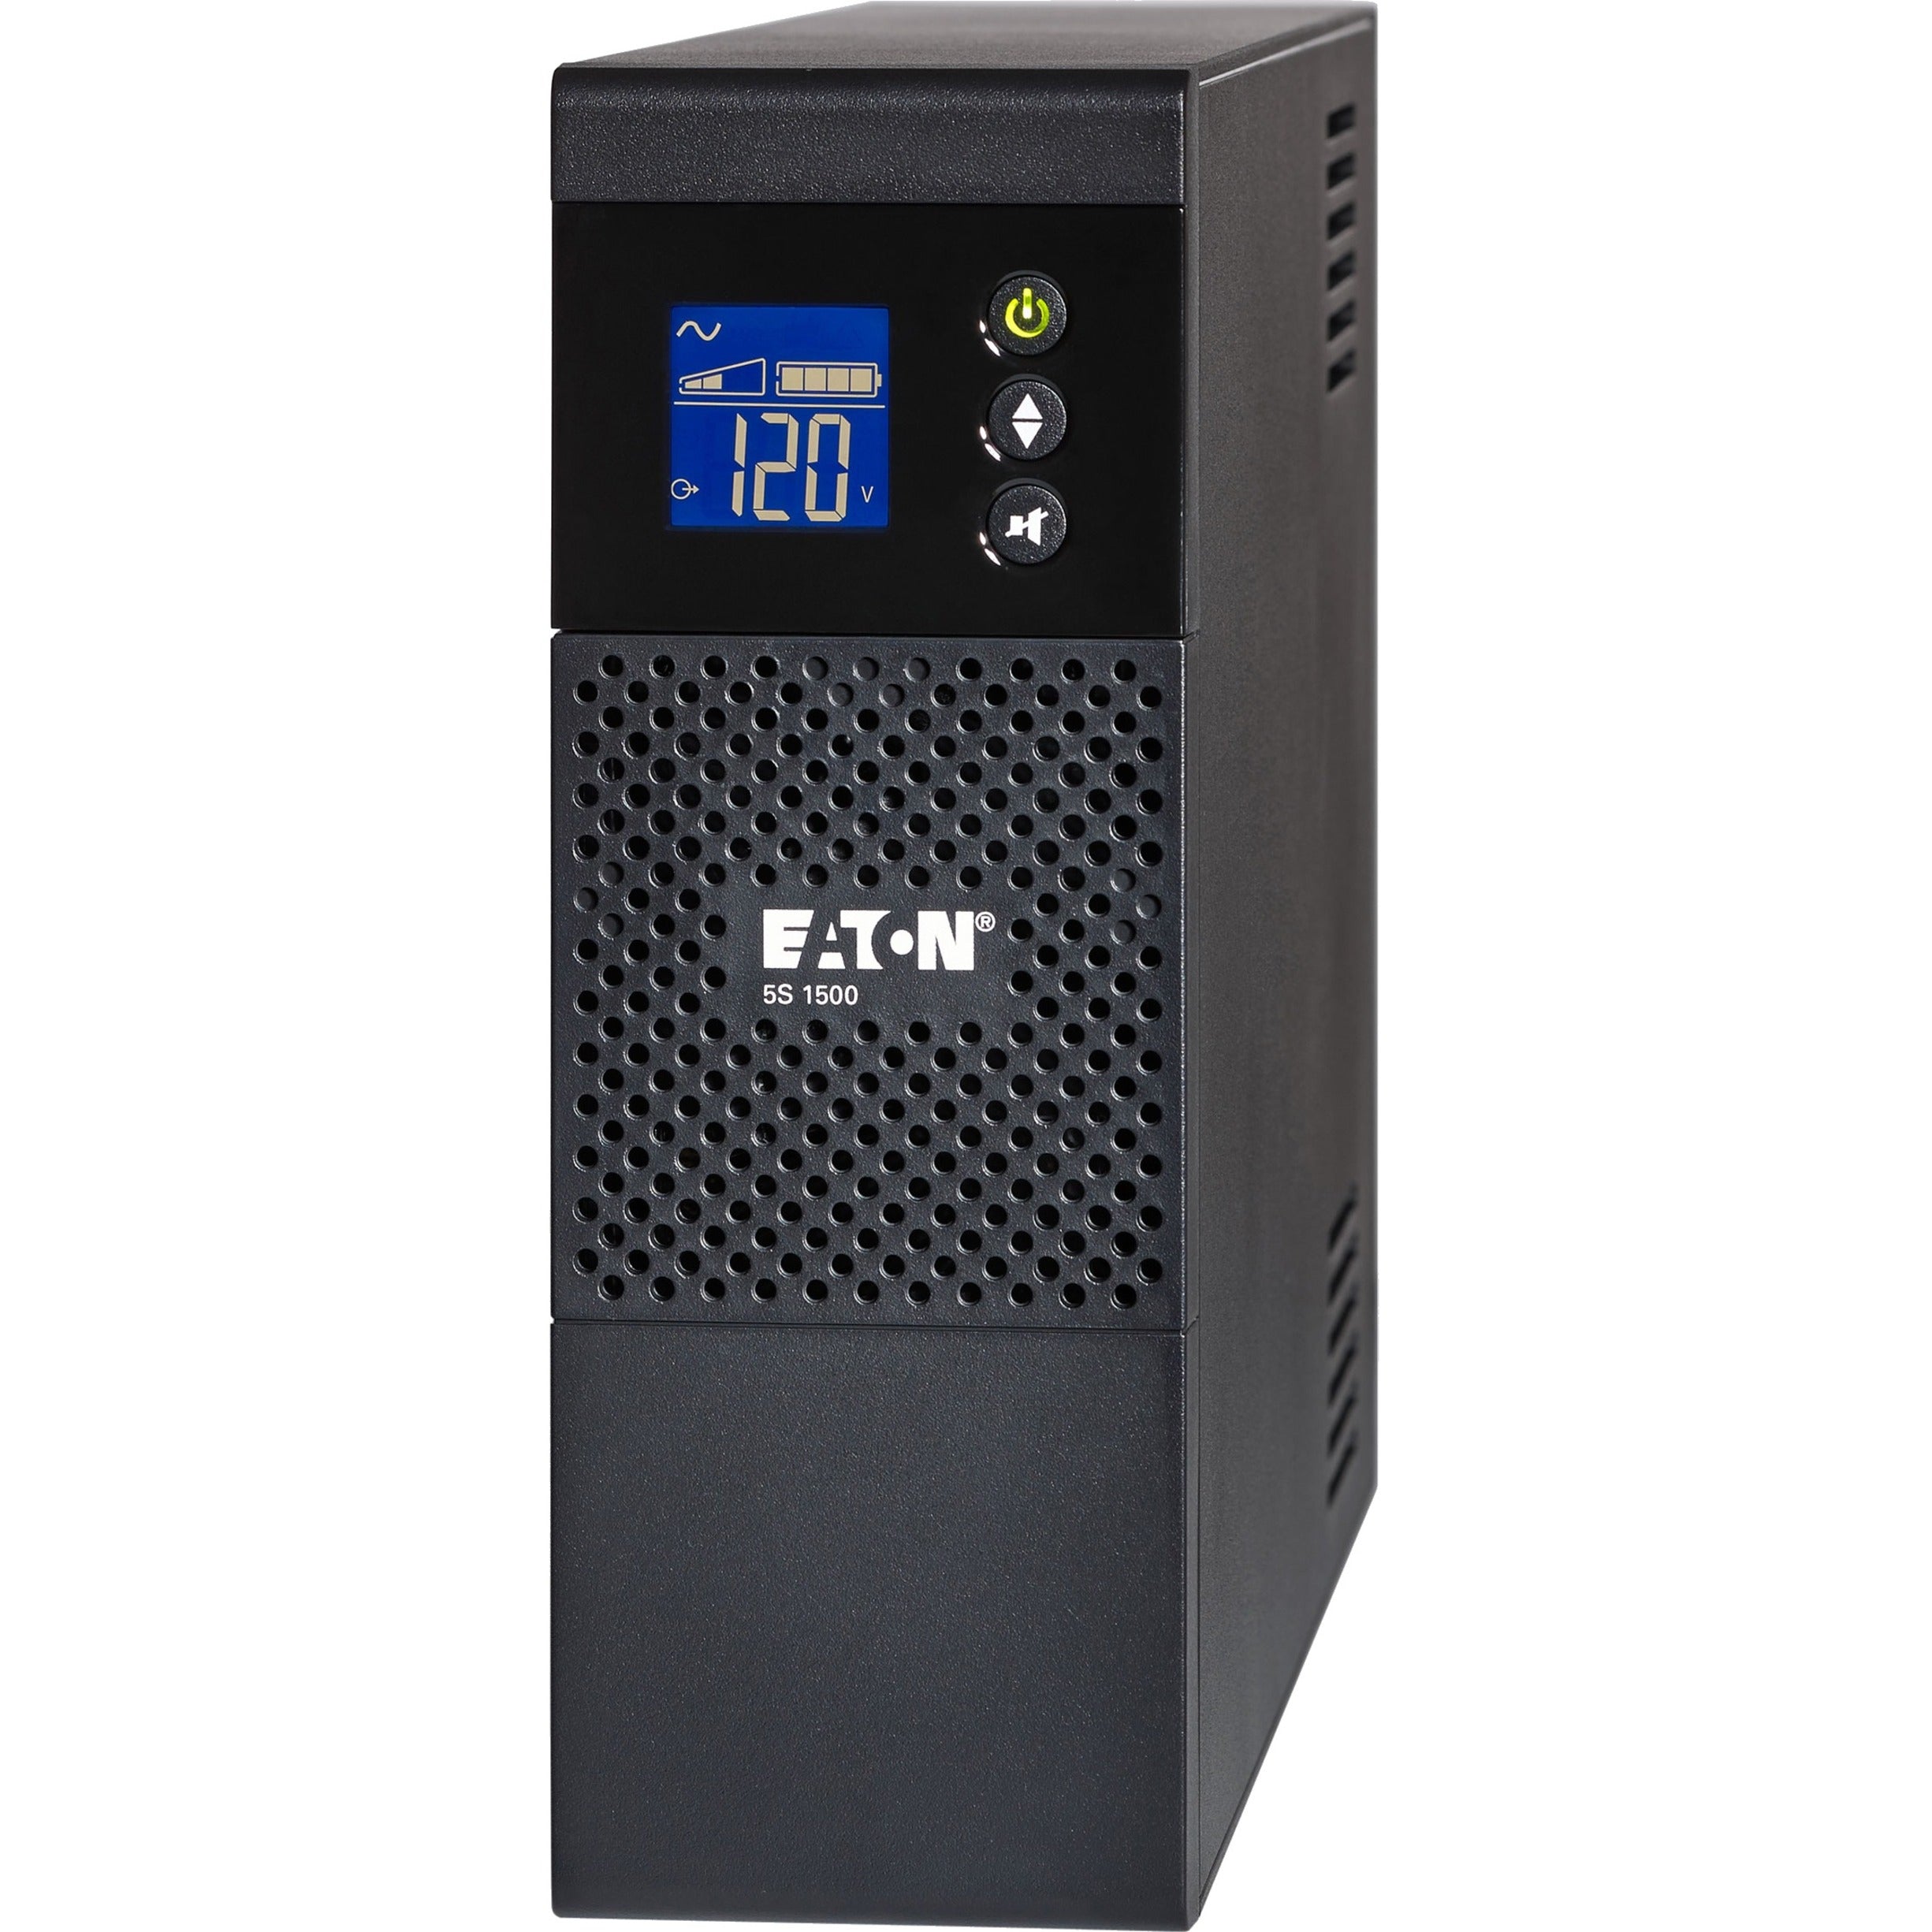 Eaton 5S LCD 1500VA TOWER 120V (5S1500LCD) 5S UPS, 1500 VA/900 W, 115 V AC, 10 x NEMA 5-15R